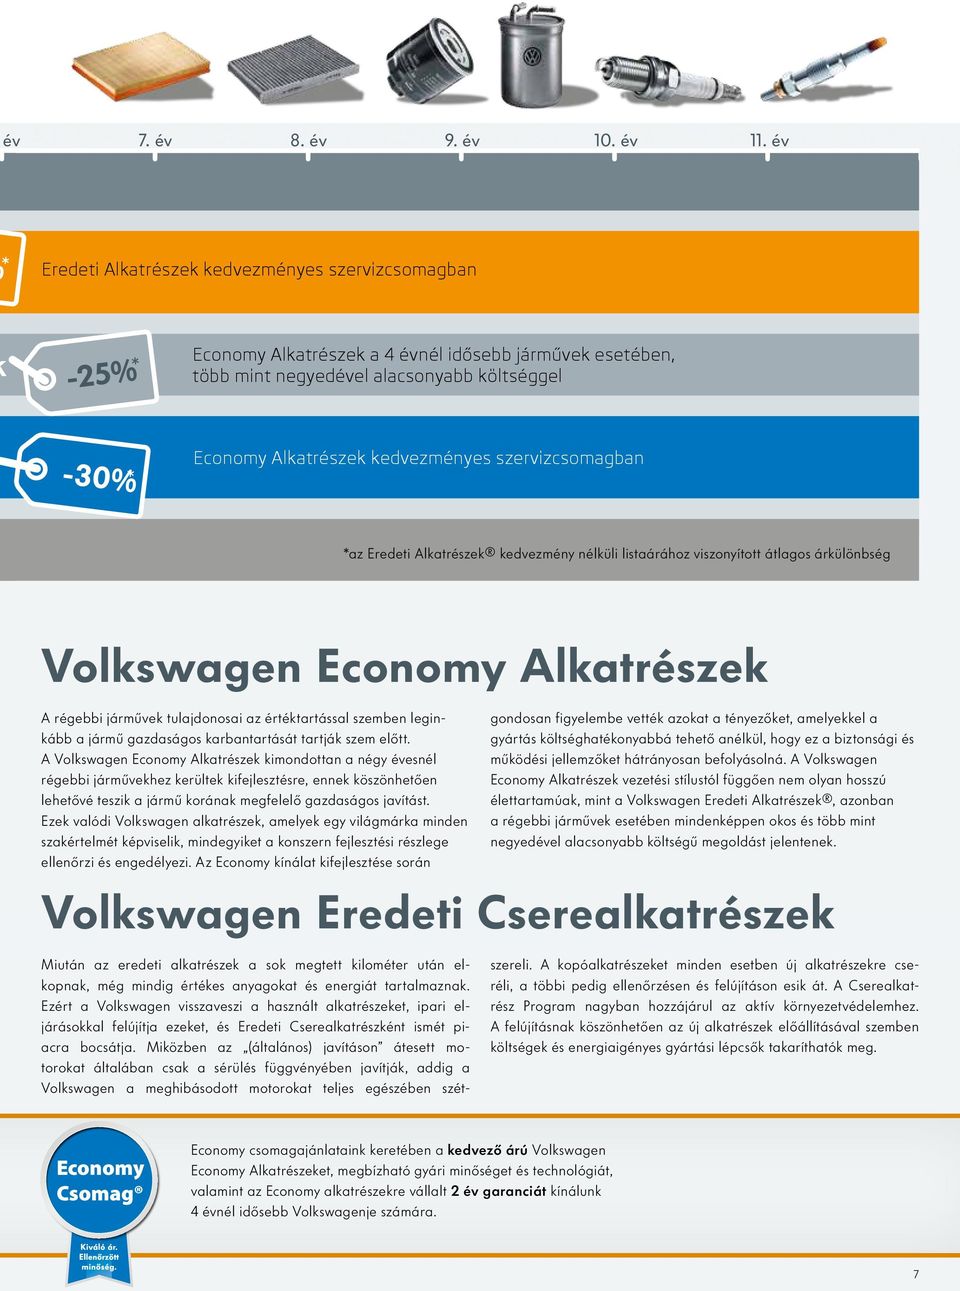 kedvezményes szervizcsomagban *az Eredeti Alkatrészek kedvezmény nélküli listaárához viszonyított átlagos árkülönbség Volkswagen Economy Alkatrészek A régebbi járművek tulajdonosai az értéktartással